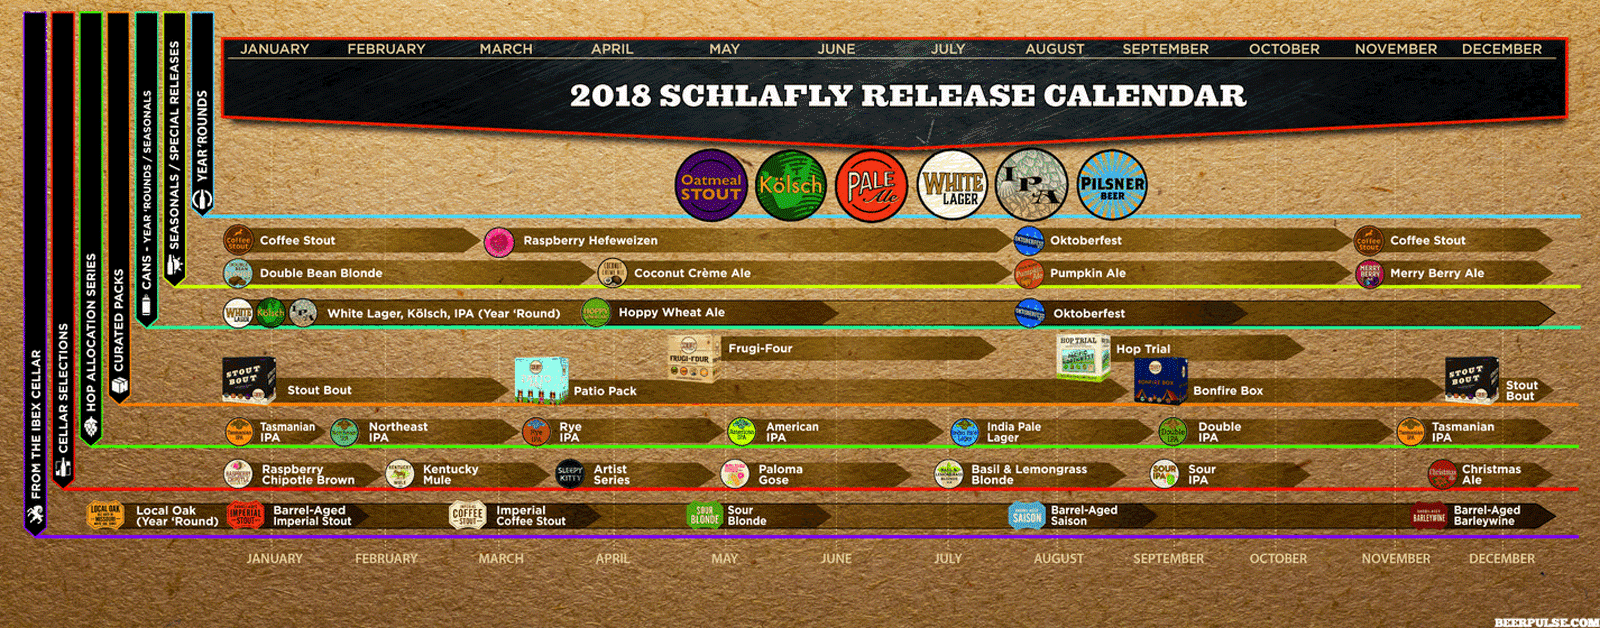 2018 Schlafly Beer Release Calendar